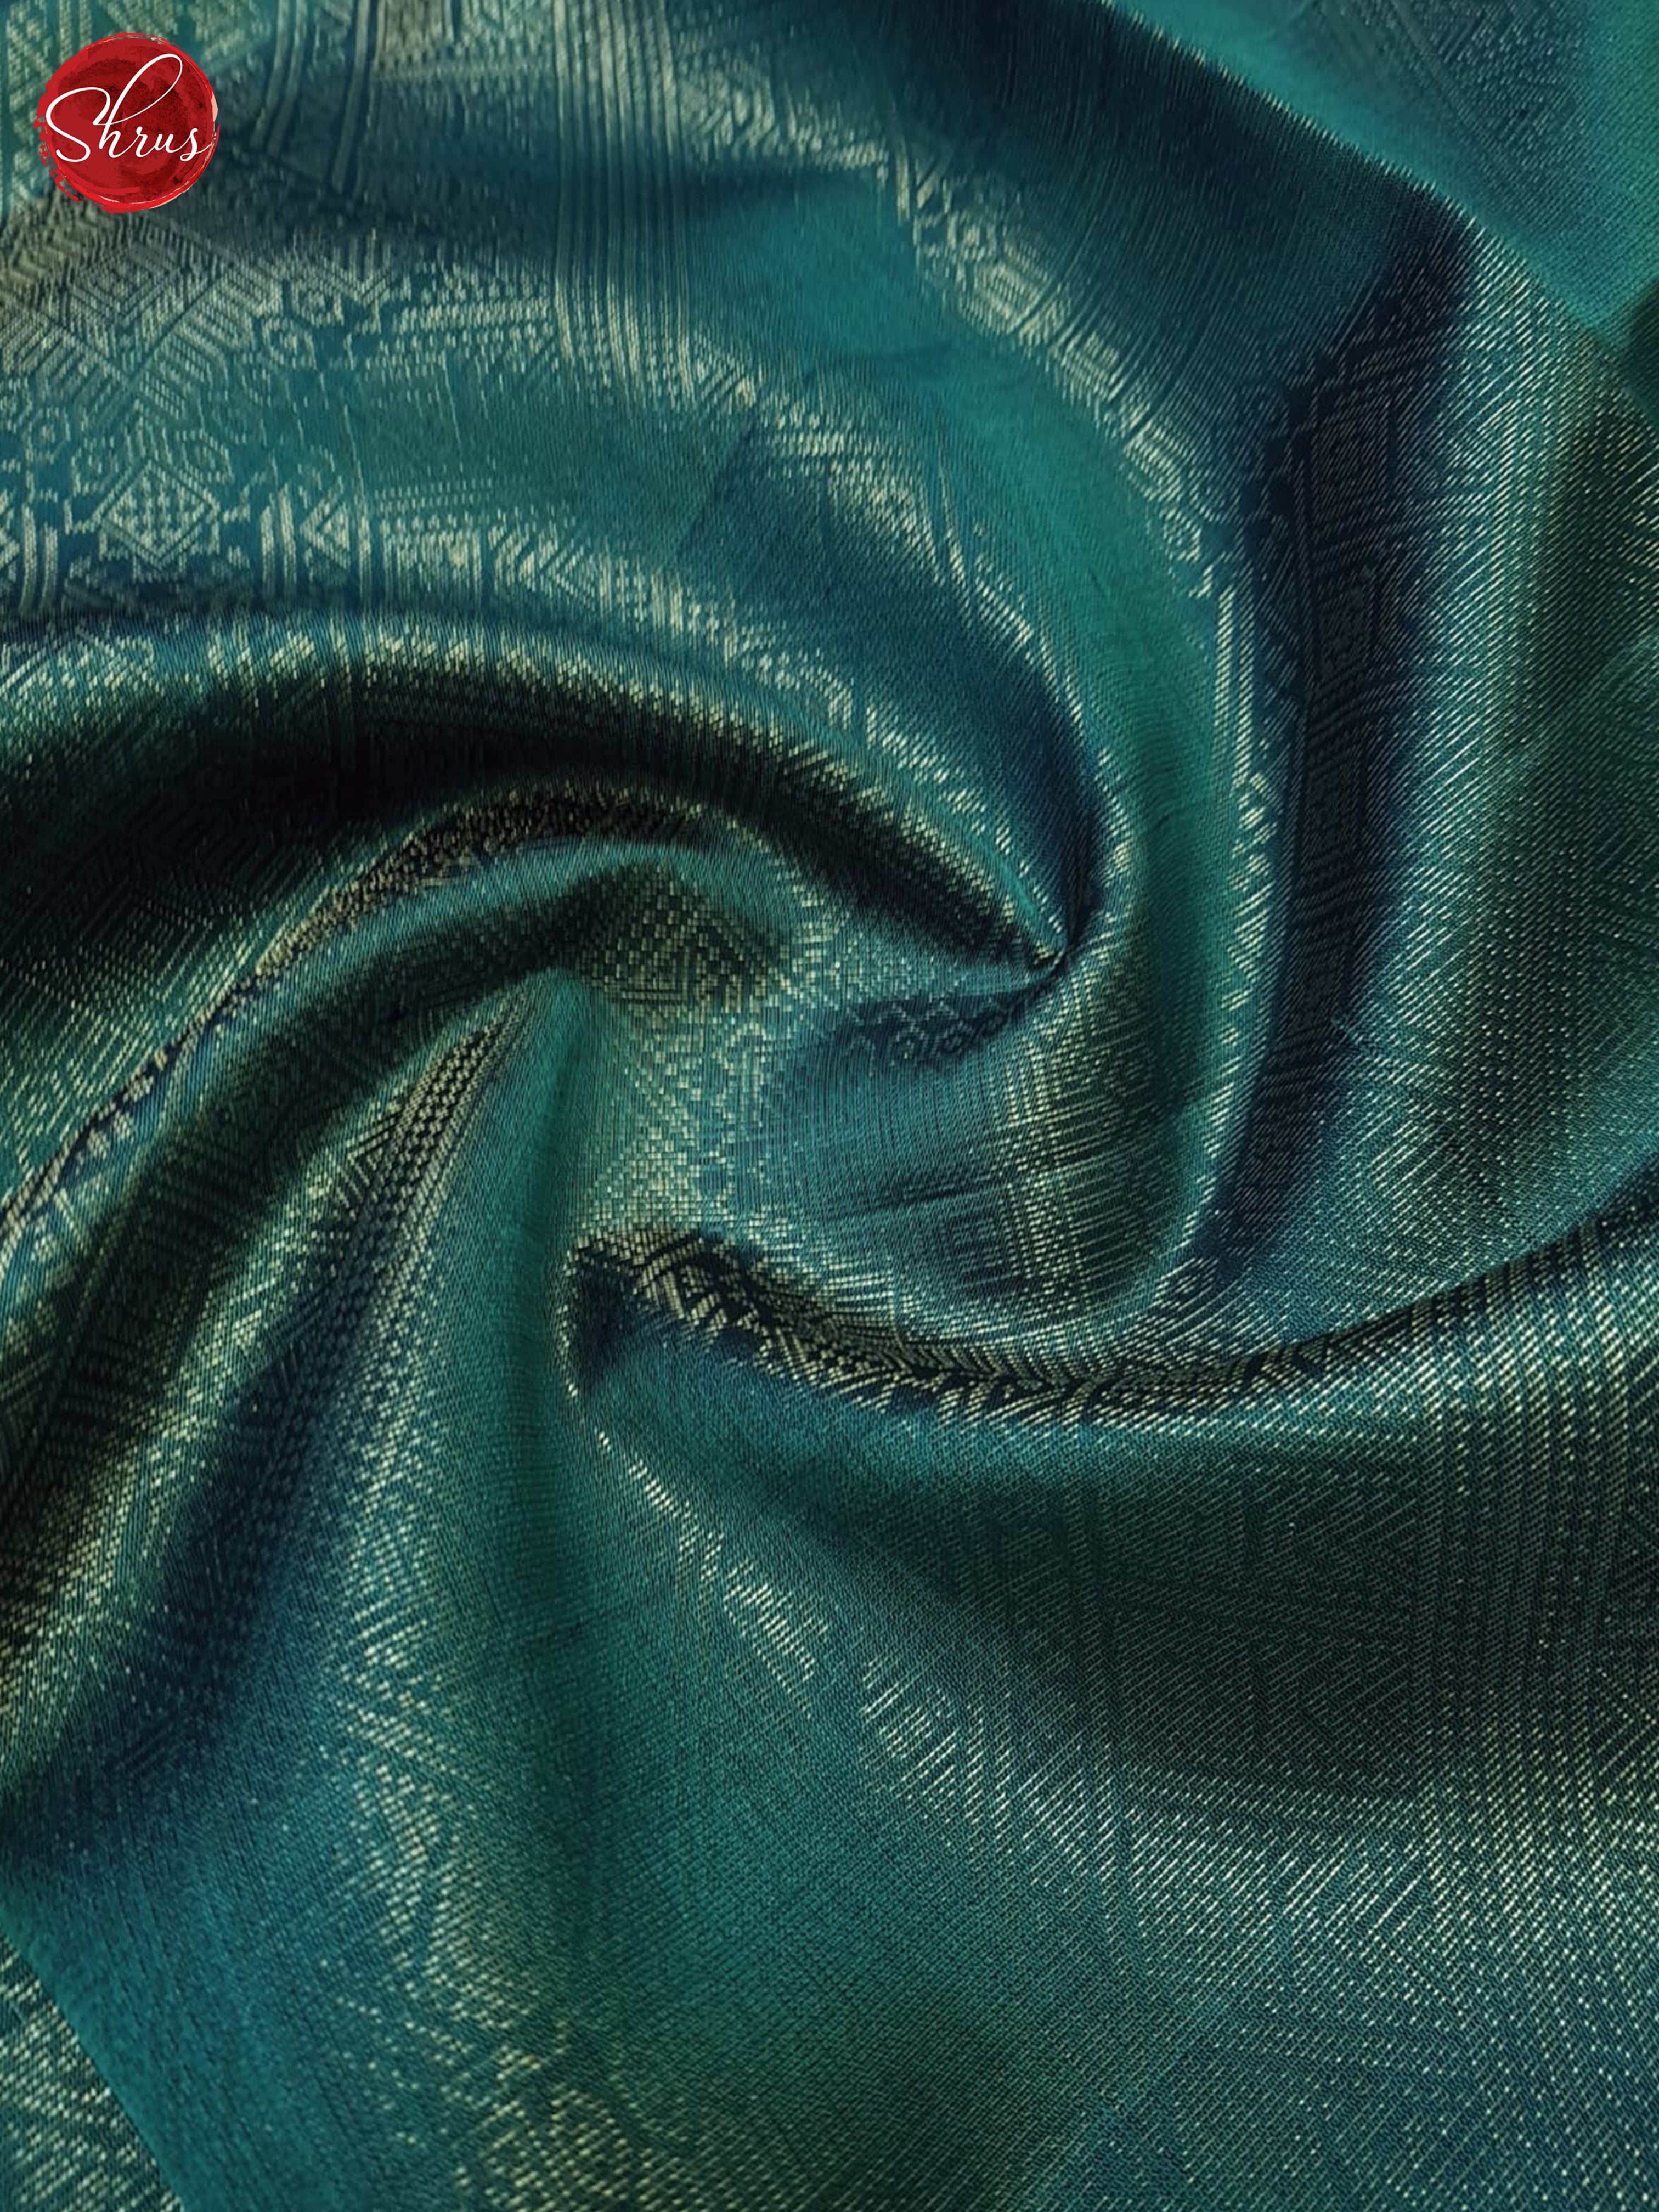 Blue & Black- Soft Silk Saree - Shop on ShrusEternity.com